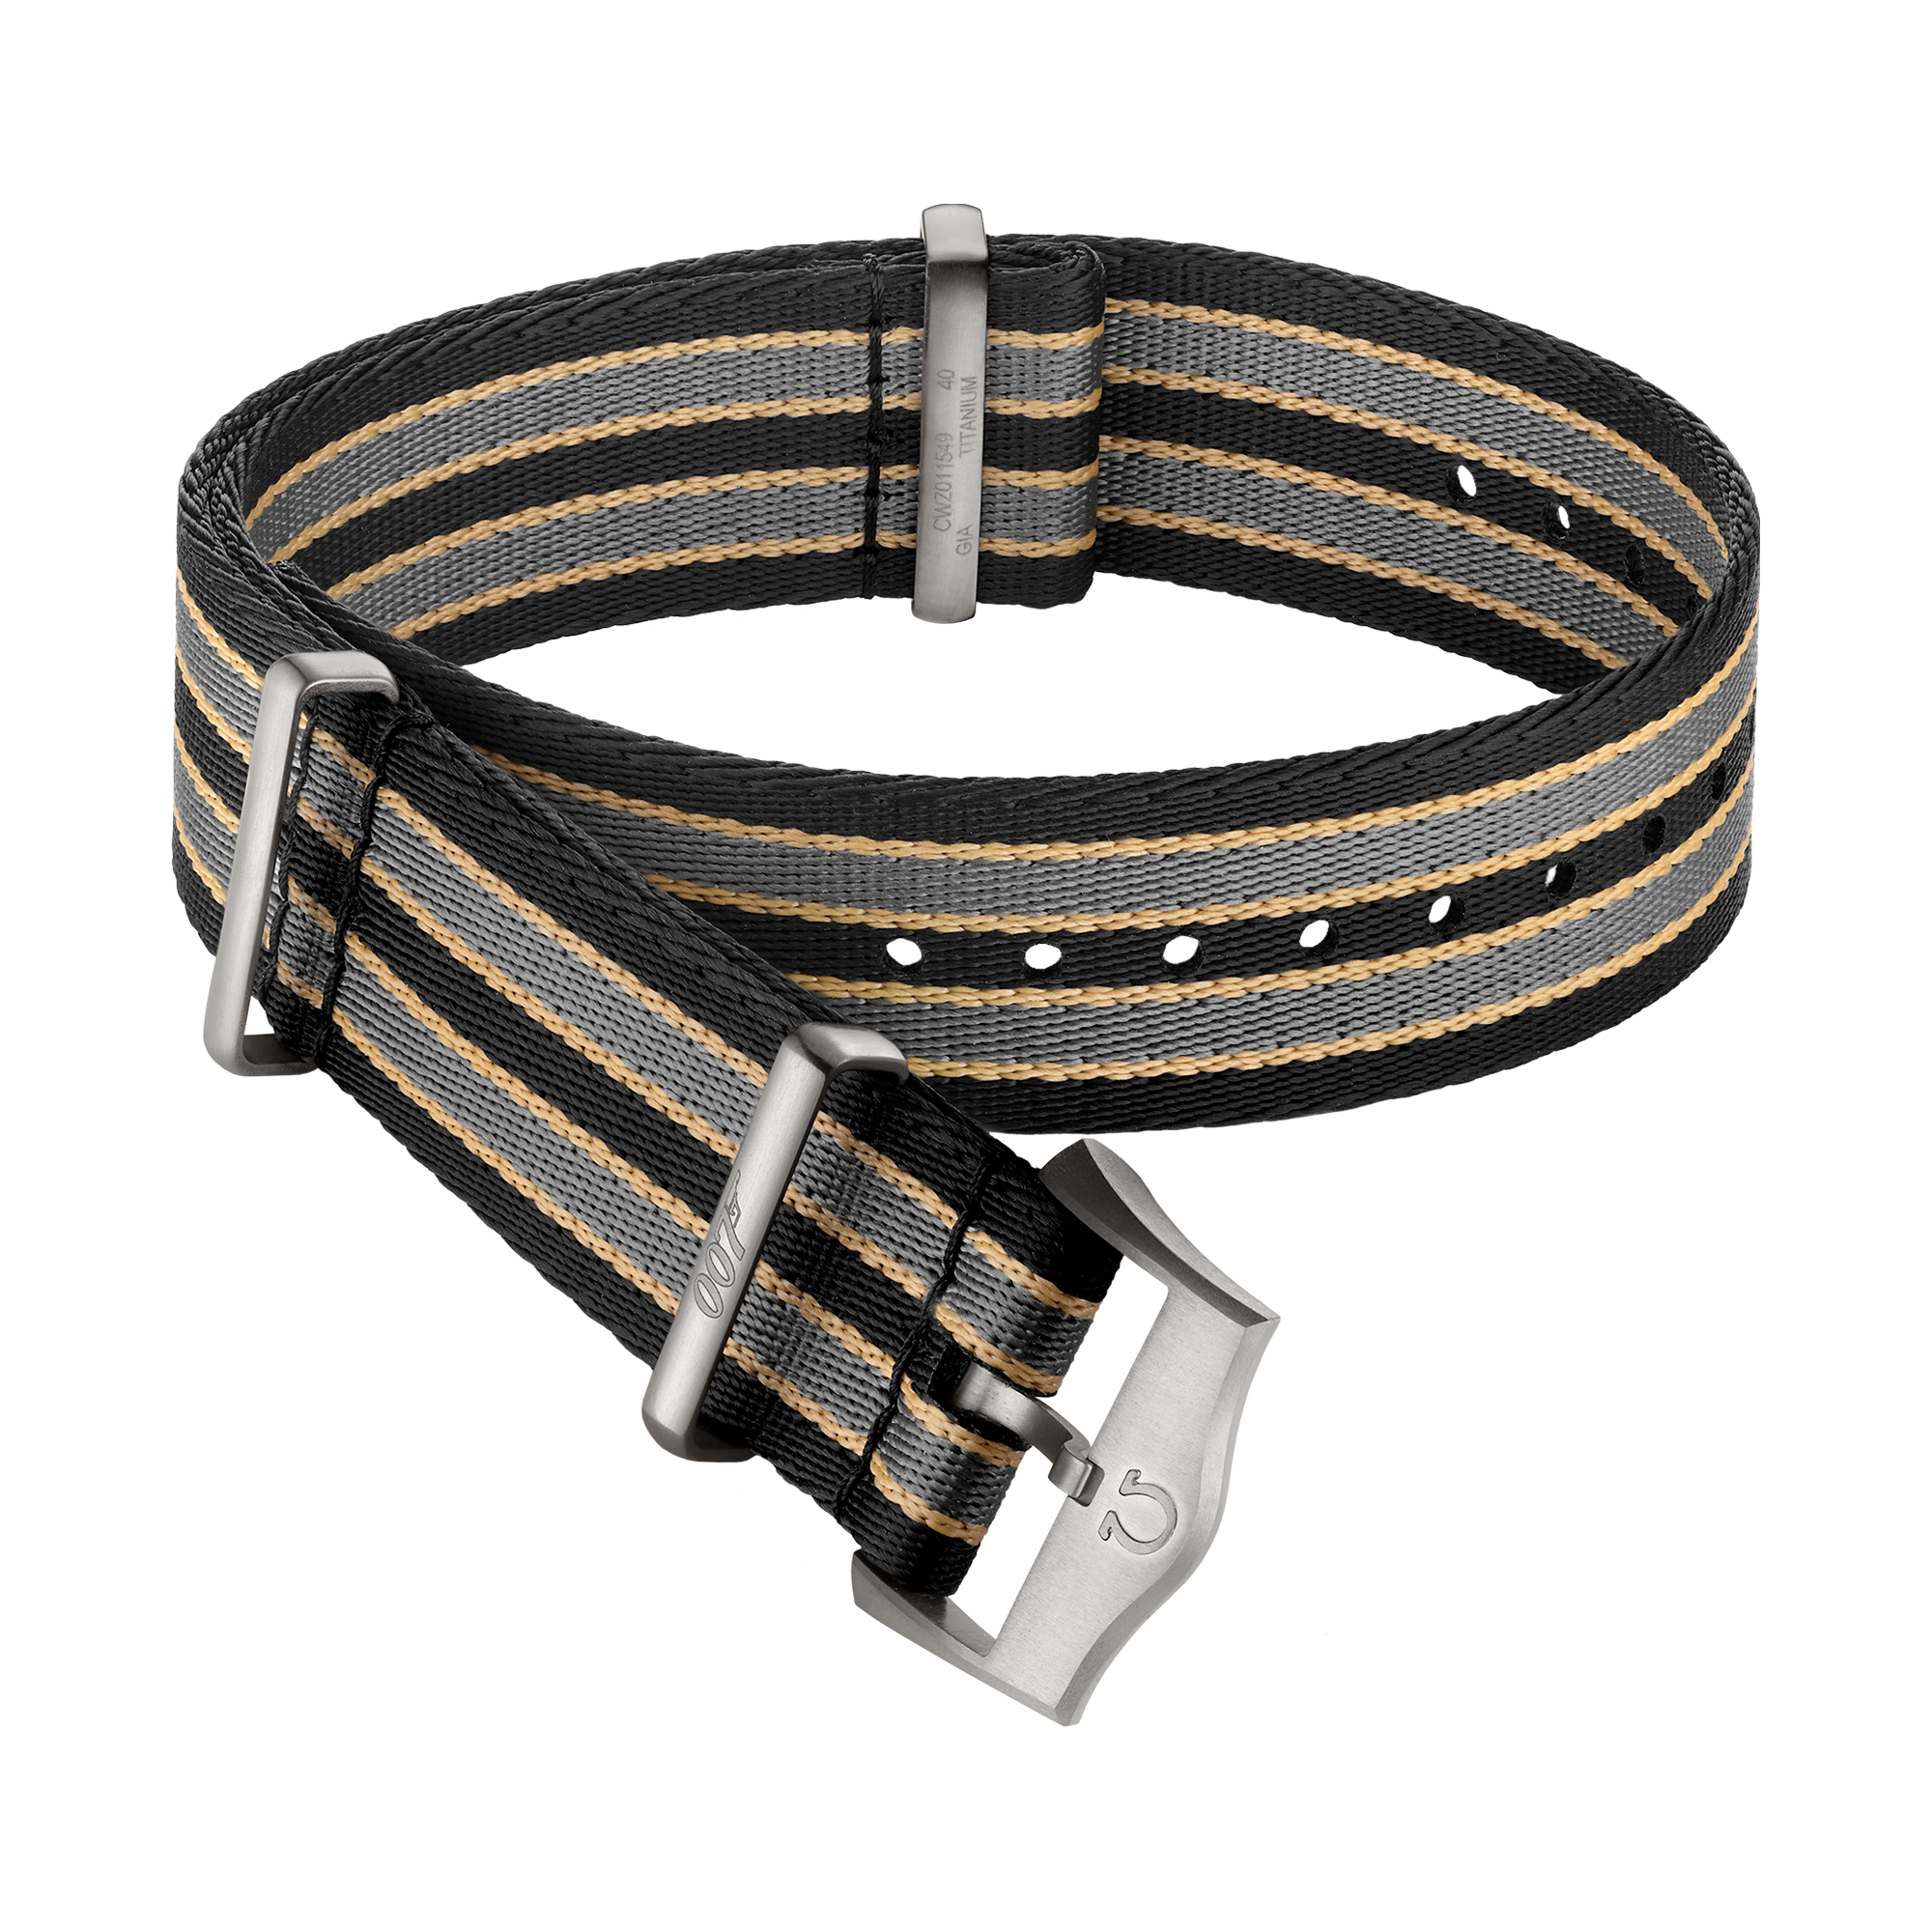 NATO strap - Polyamide striped dark brown, grey and beige strap - 031CWZ014739w